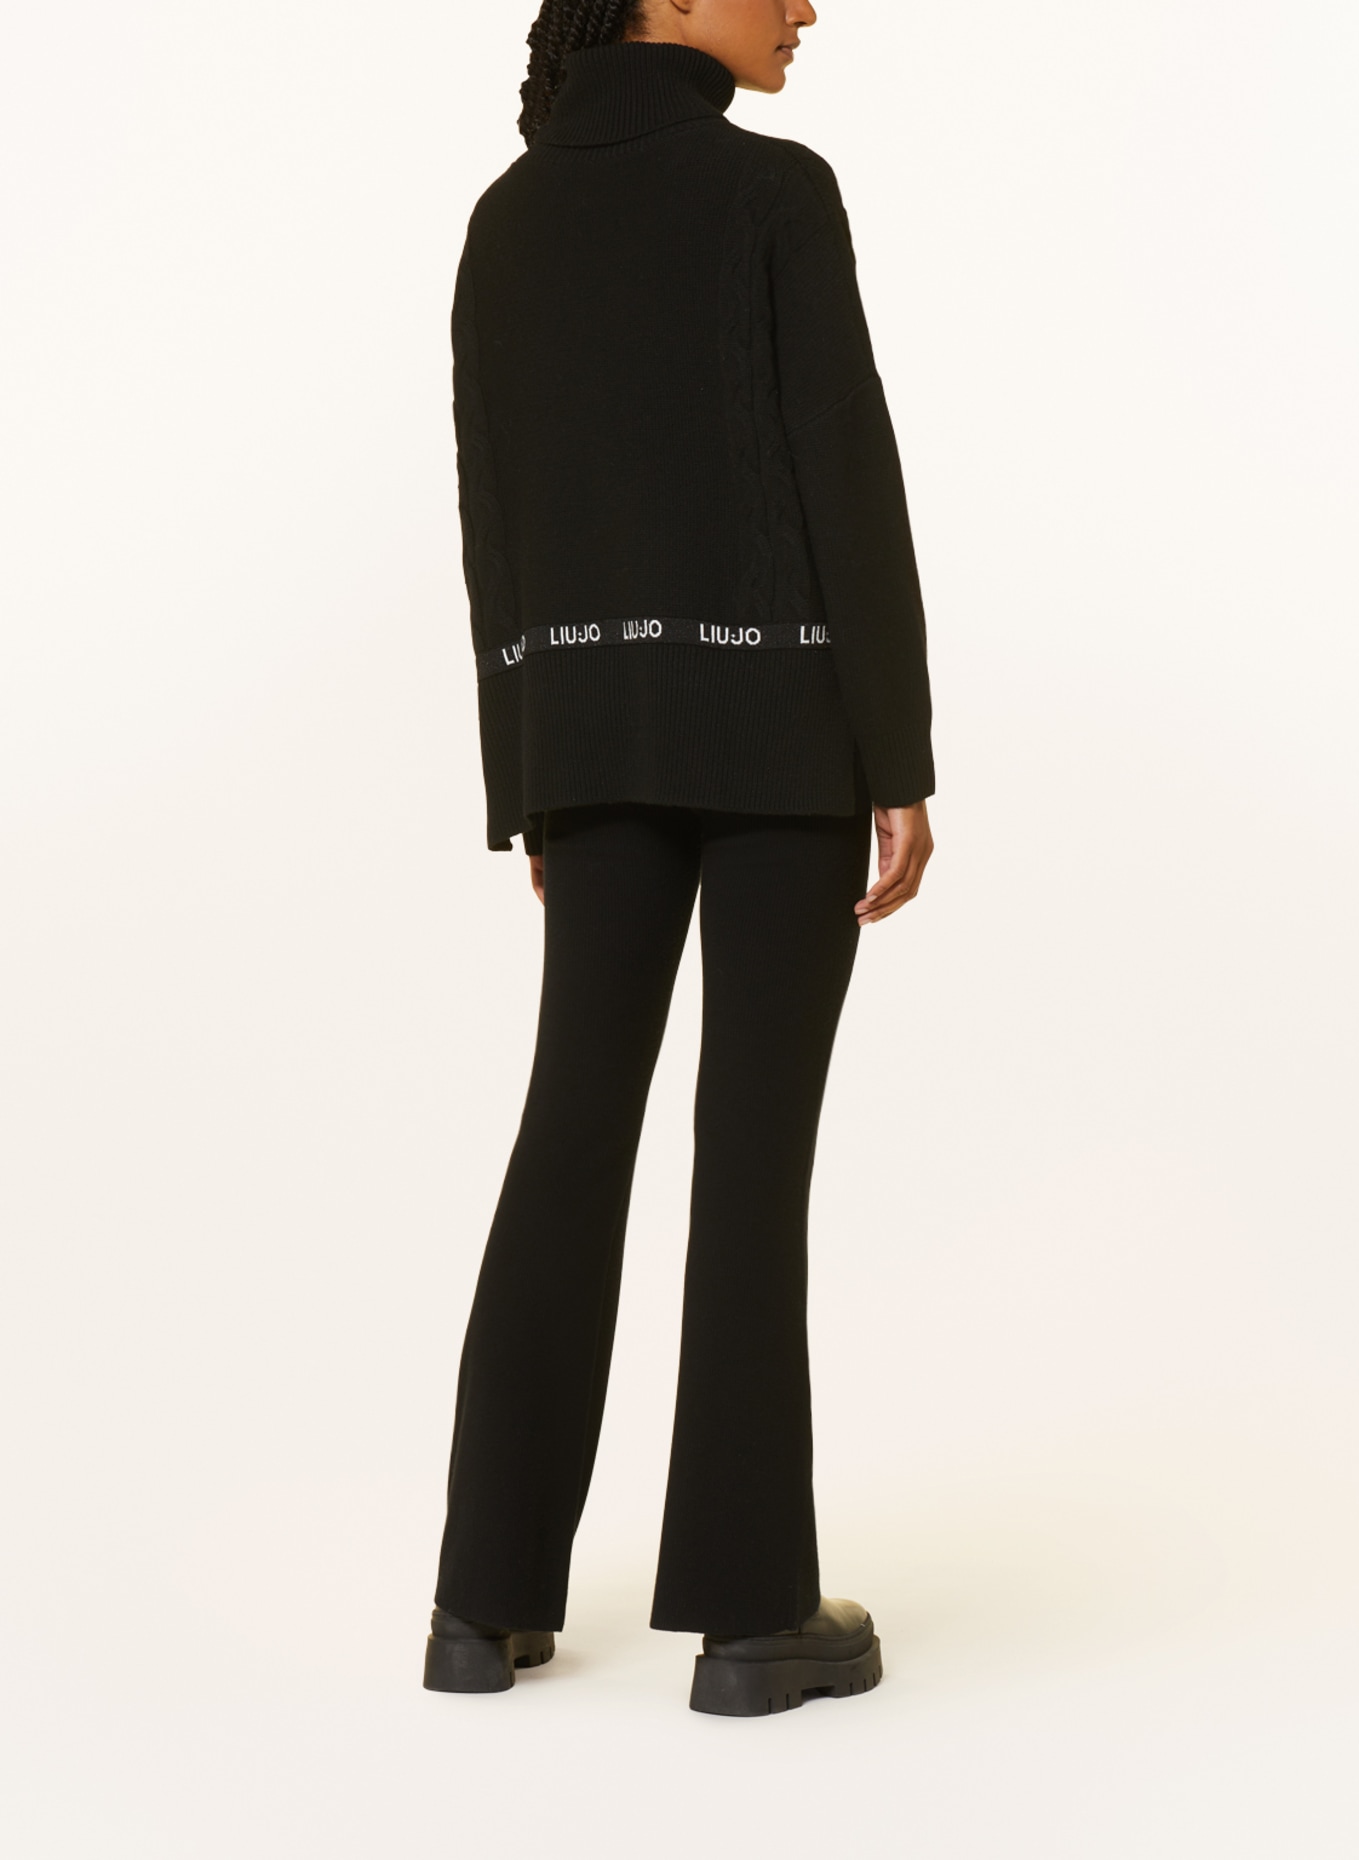 LIU JO Turtleneck sweater, Color: BLACK (Image 3)